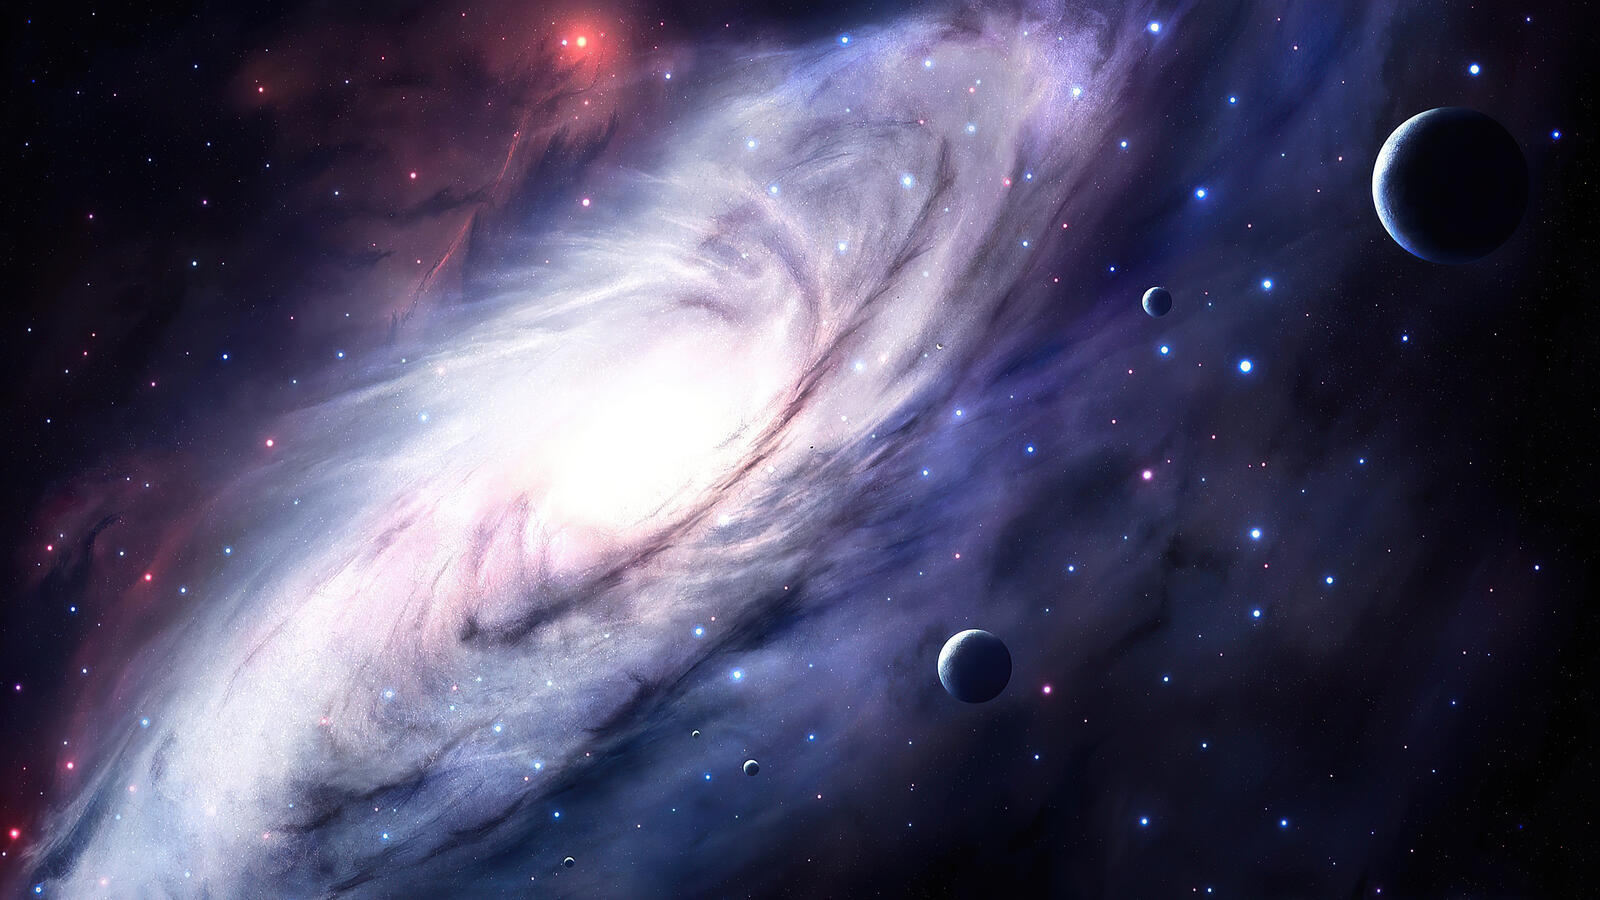 Бесплатное фото Потрясающее космическое явление с звездой и планетами